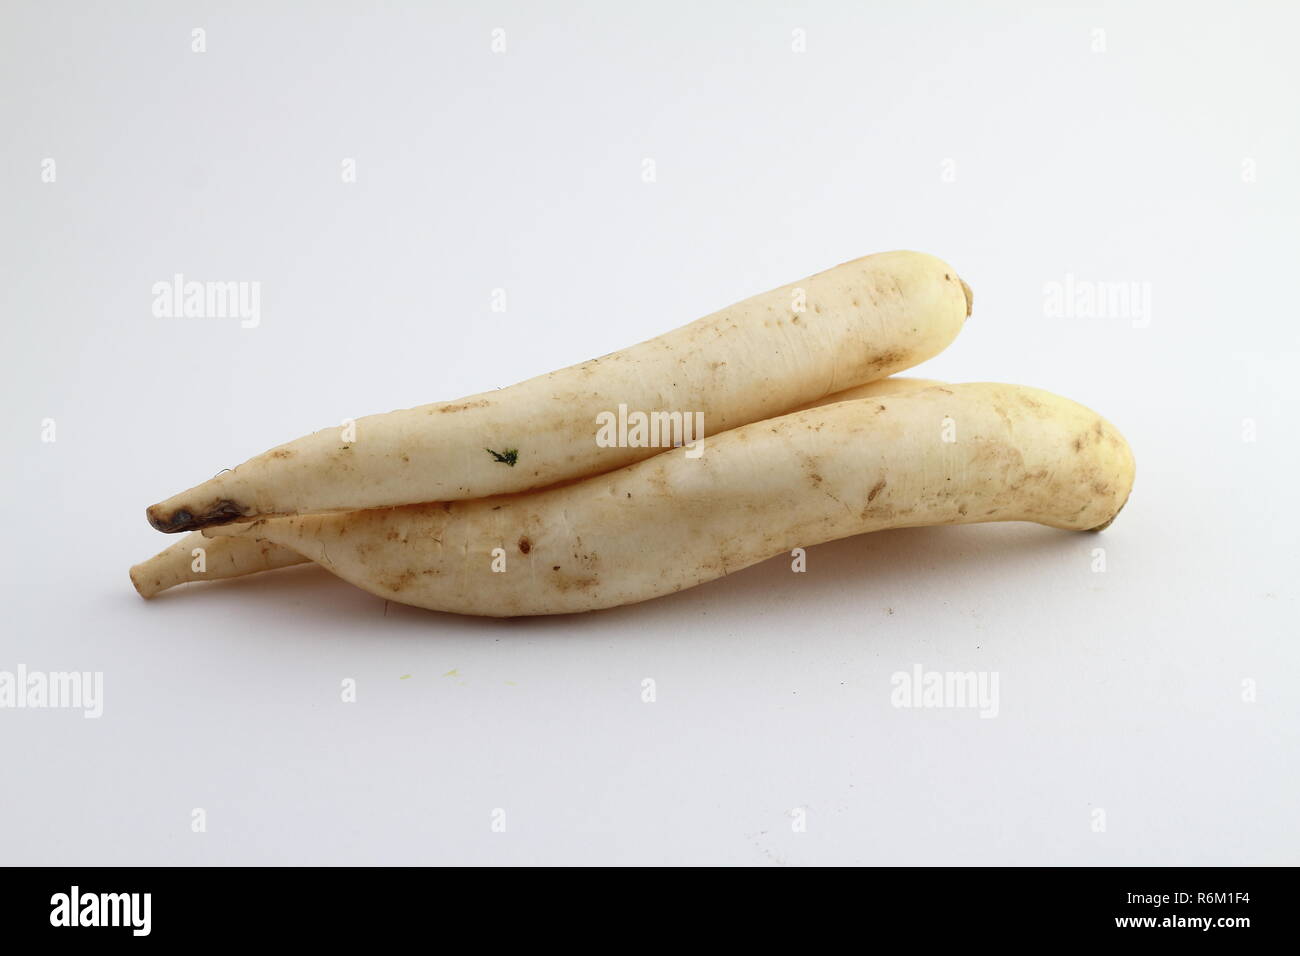 Rábano chino comida vegetales sobre fondo blanco Foto & Imagen De ...